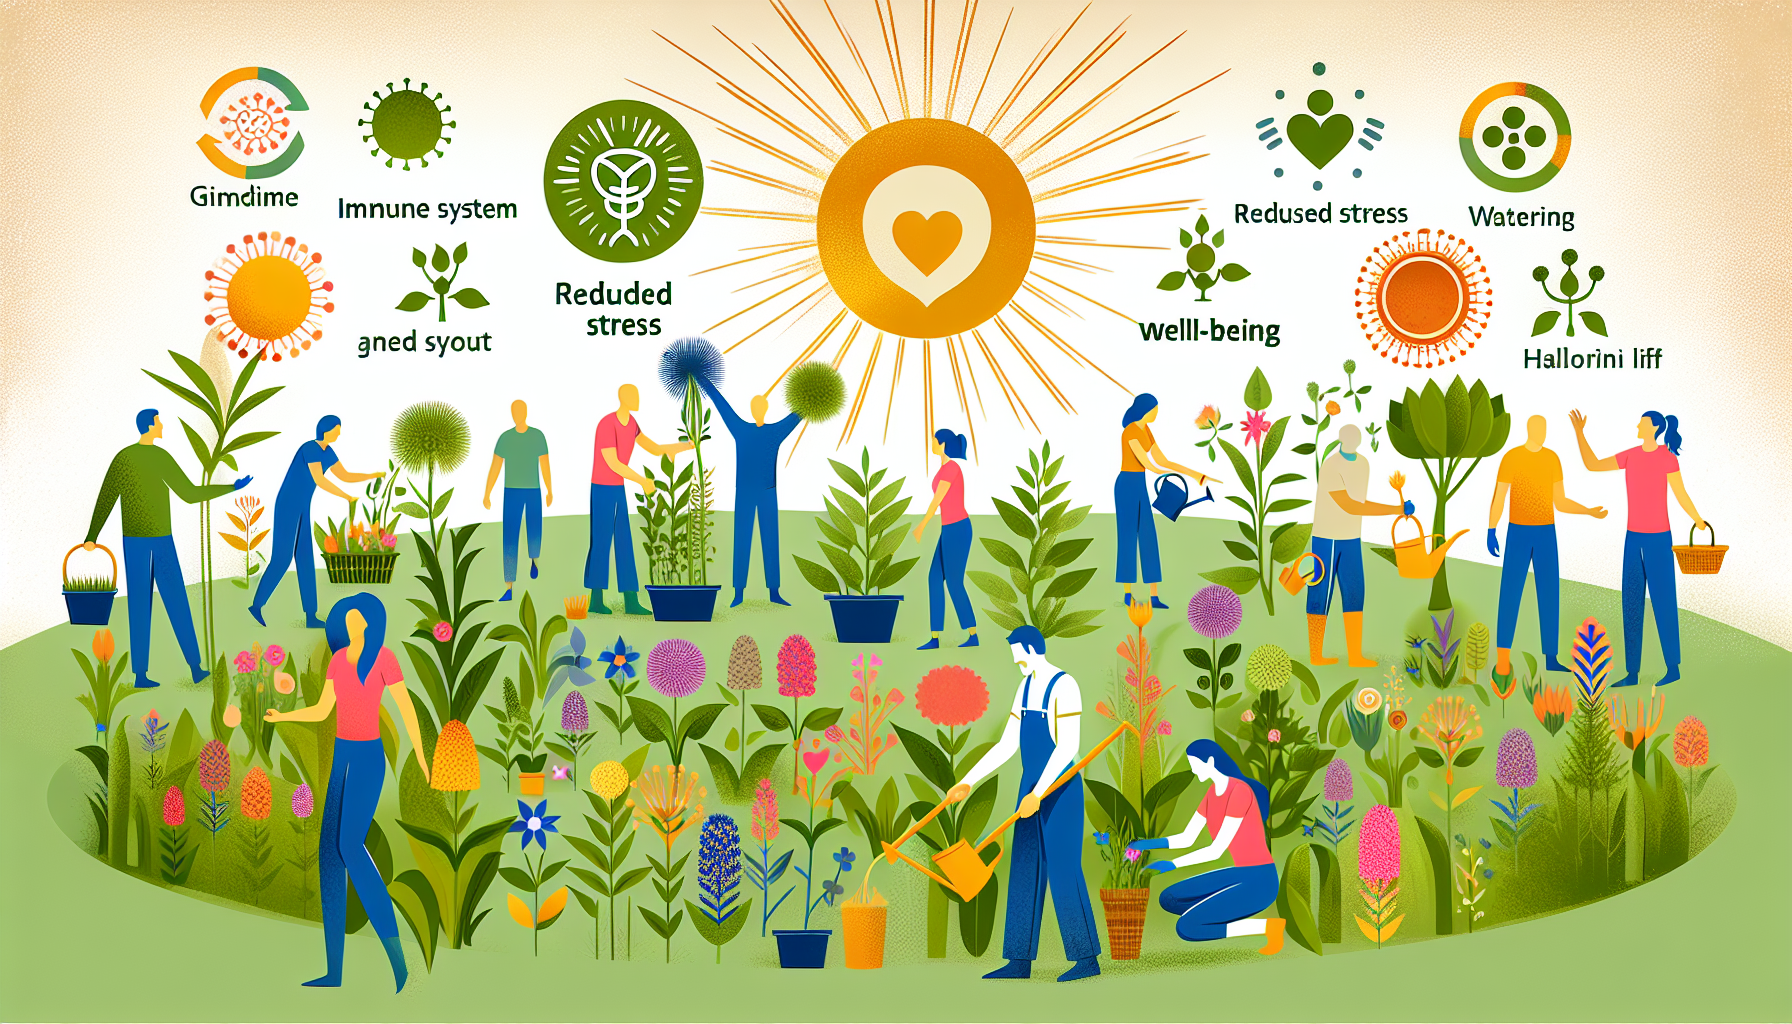 découvrez comment le jardinage renforce notre système immunitaire, diminue le stress et apporte des bienfaits incroyables pour notre santé.